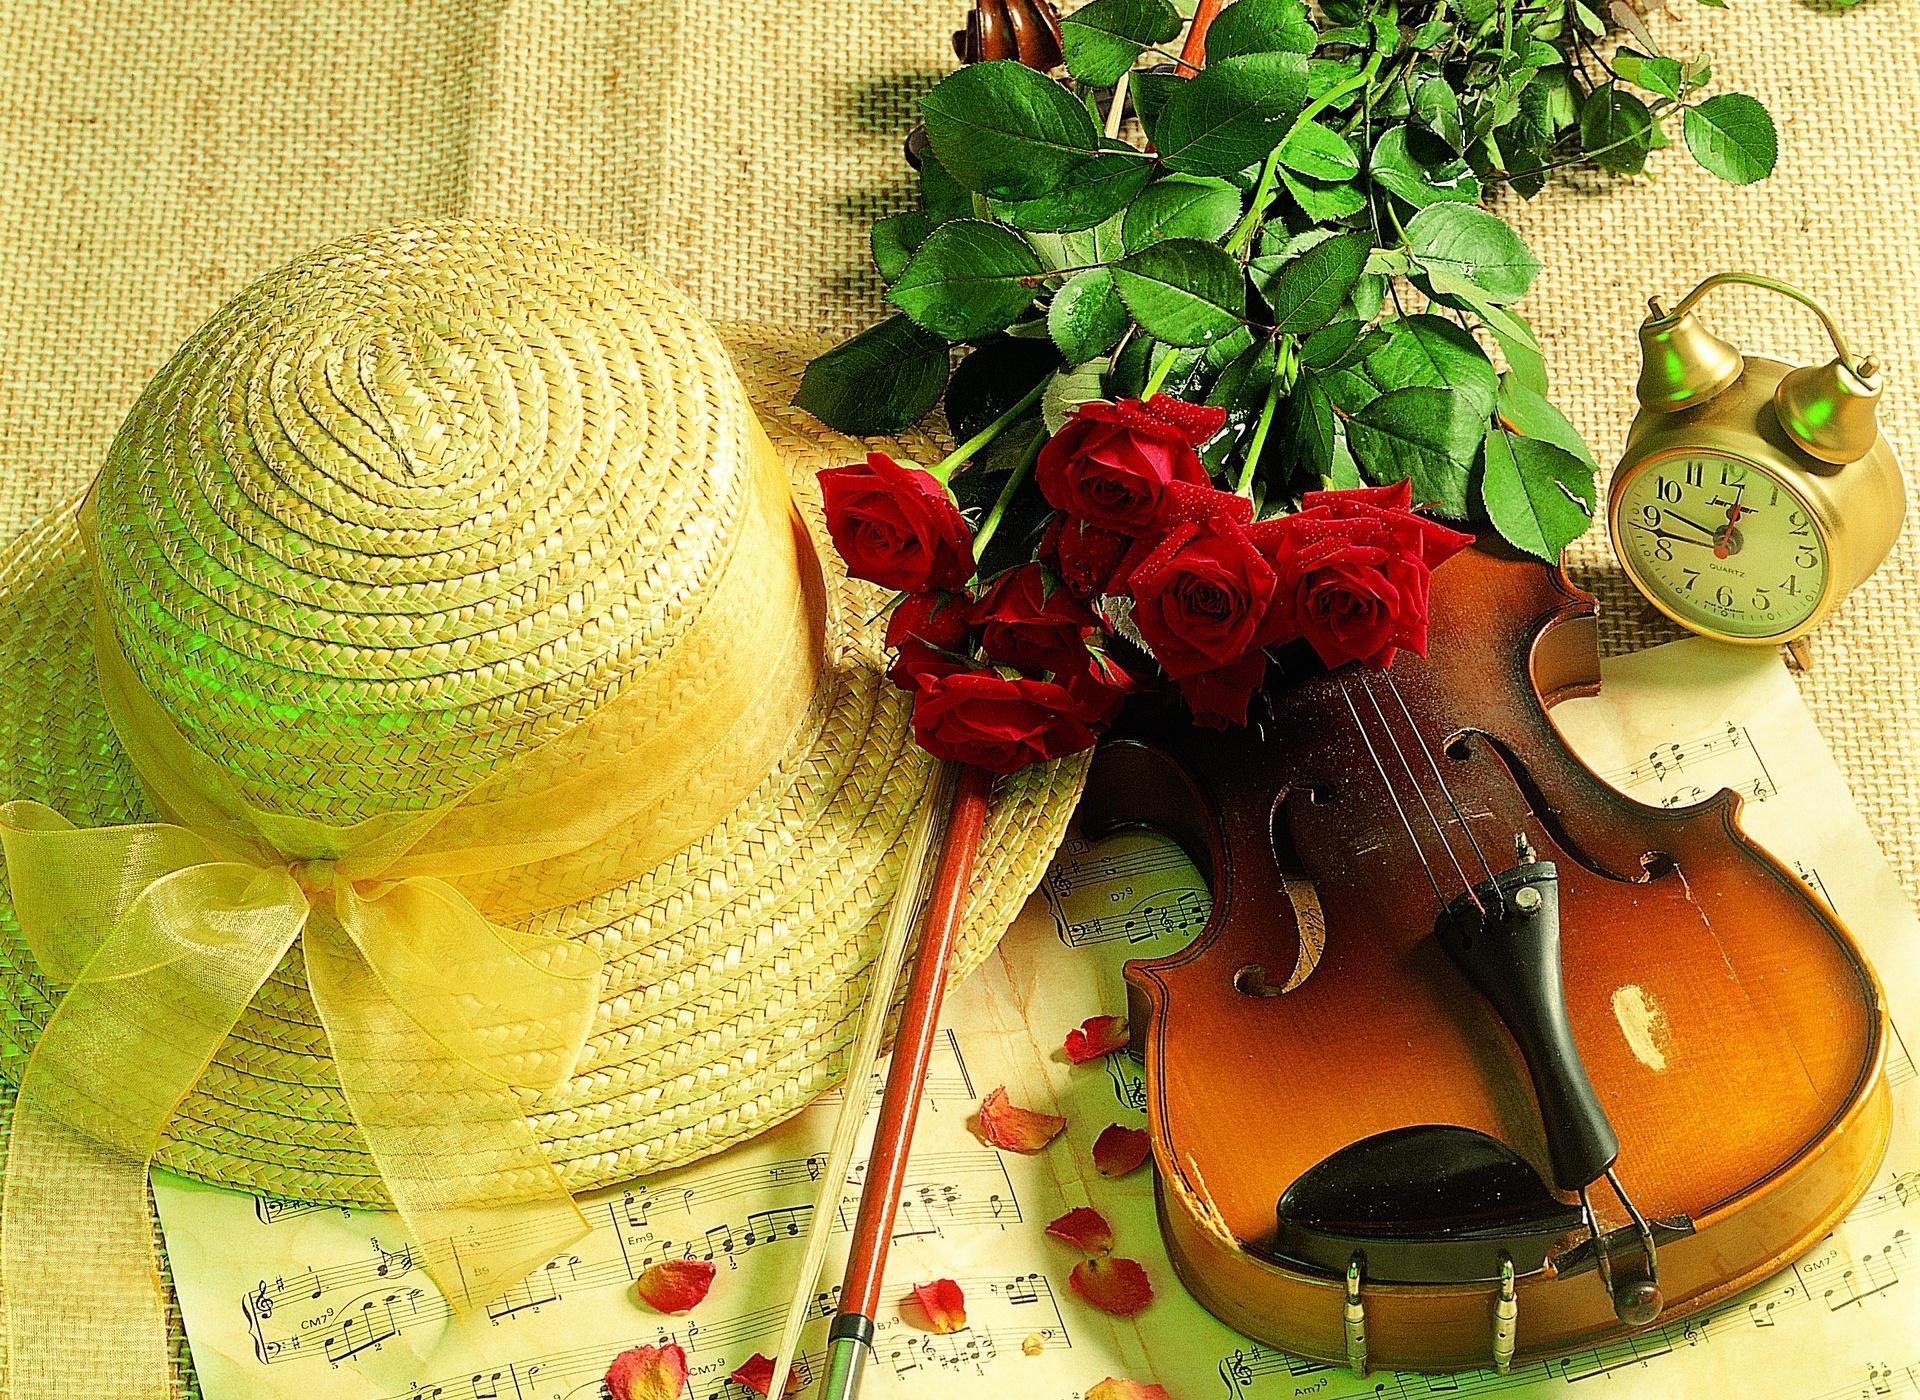 Violin Roses Wallpapers - Top Free Violin Roses ...